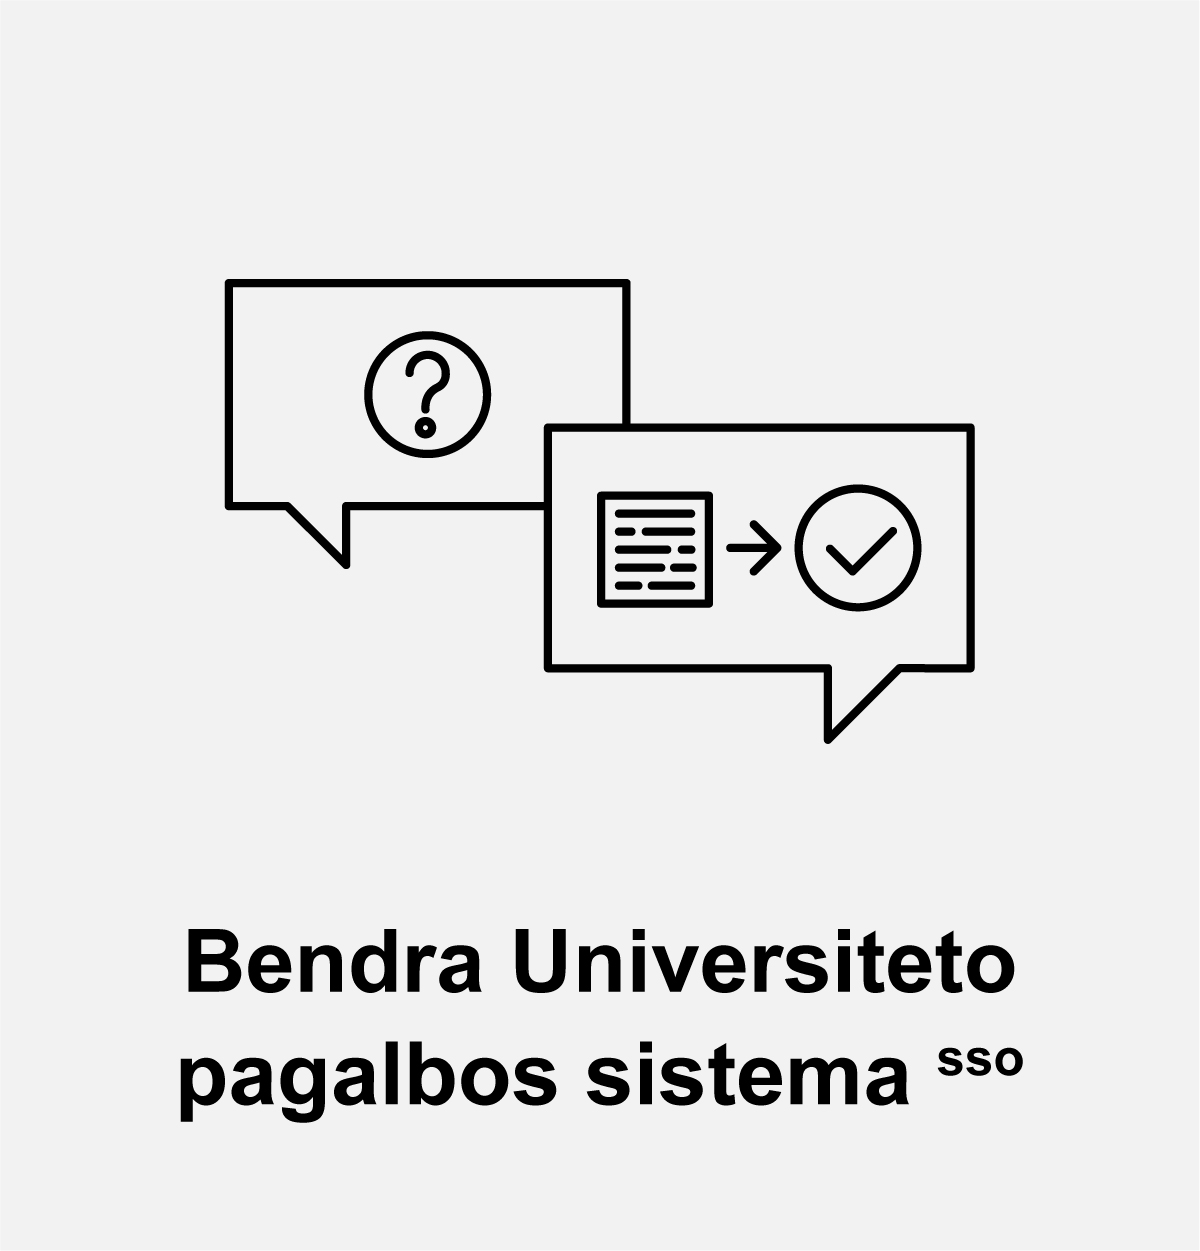 Bendra Universiteto pagalbos sistema